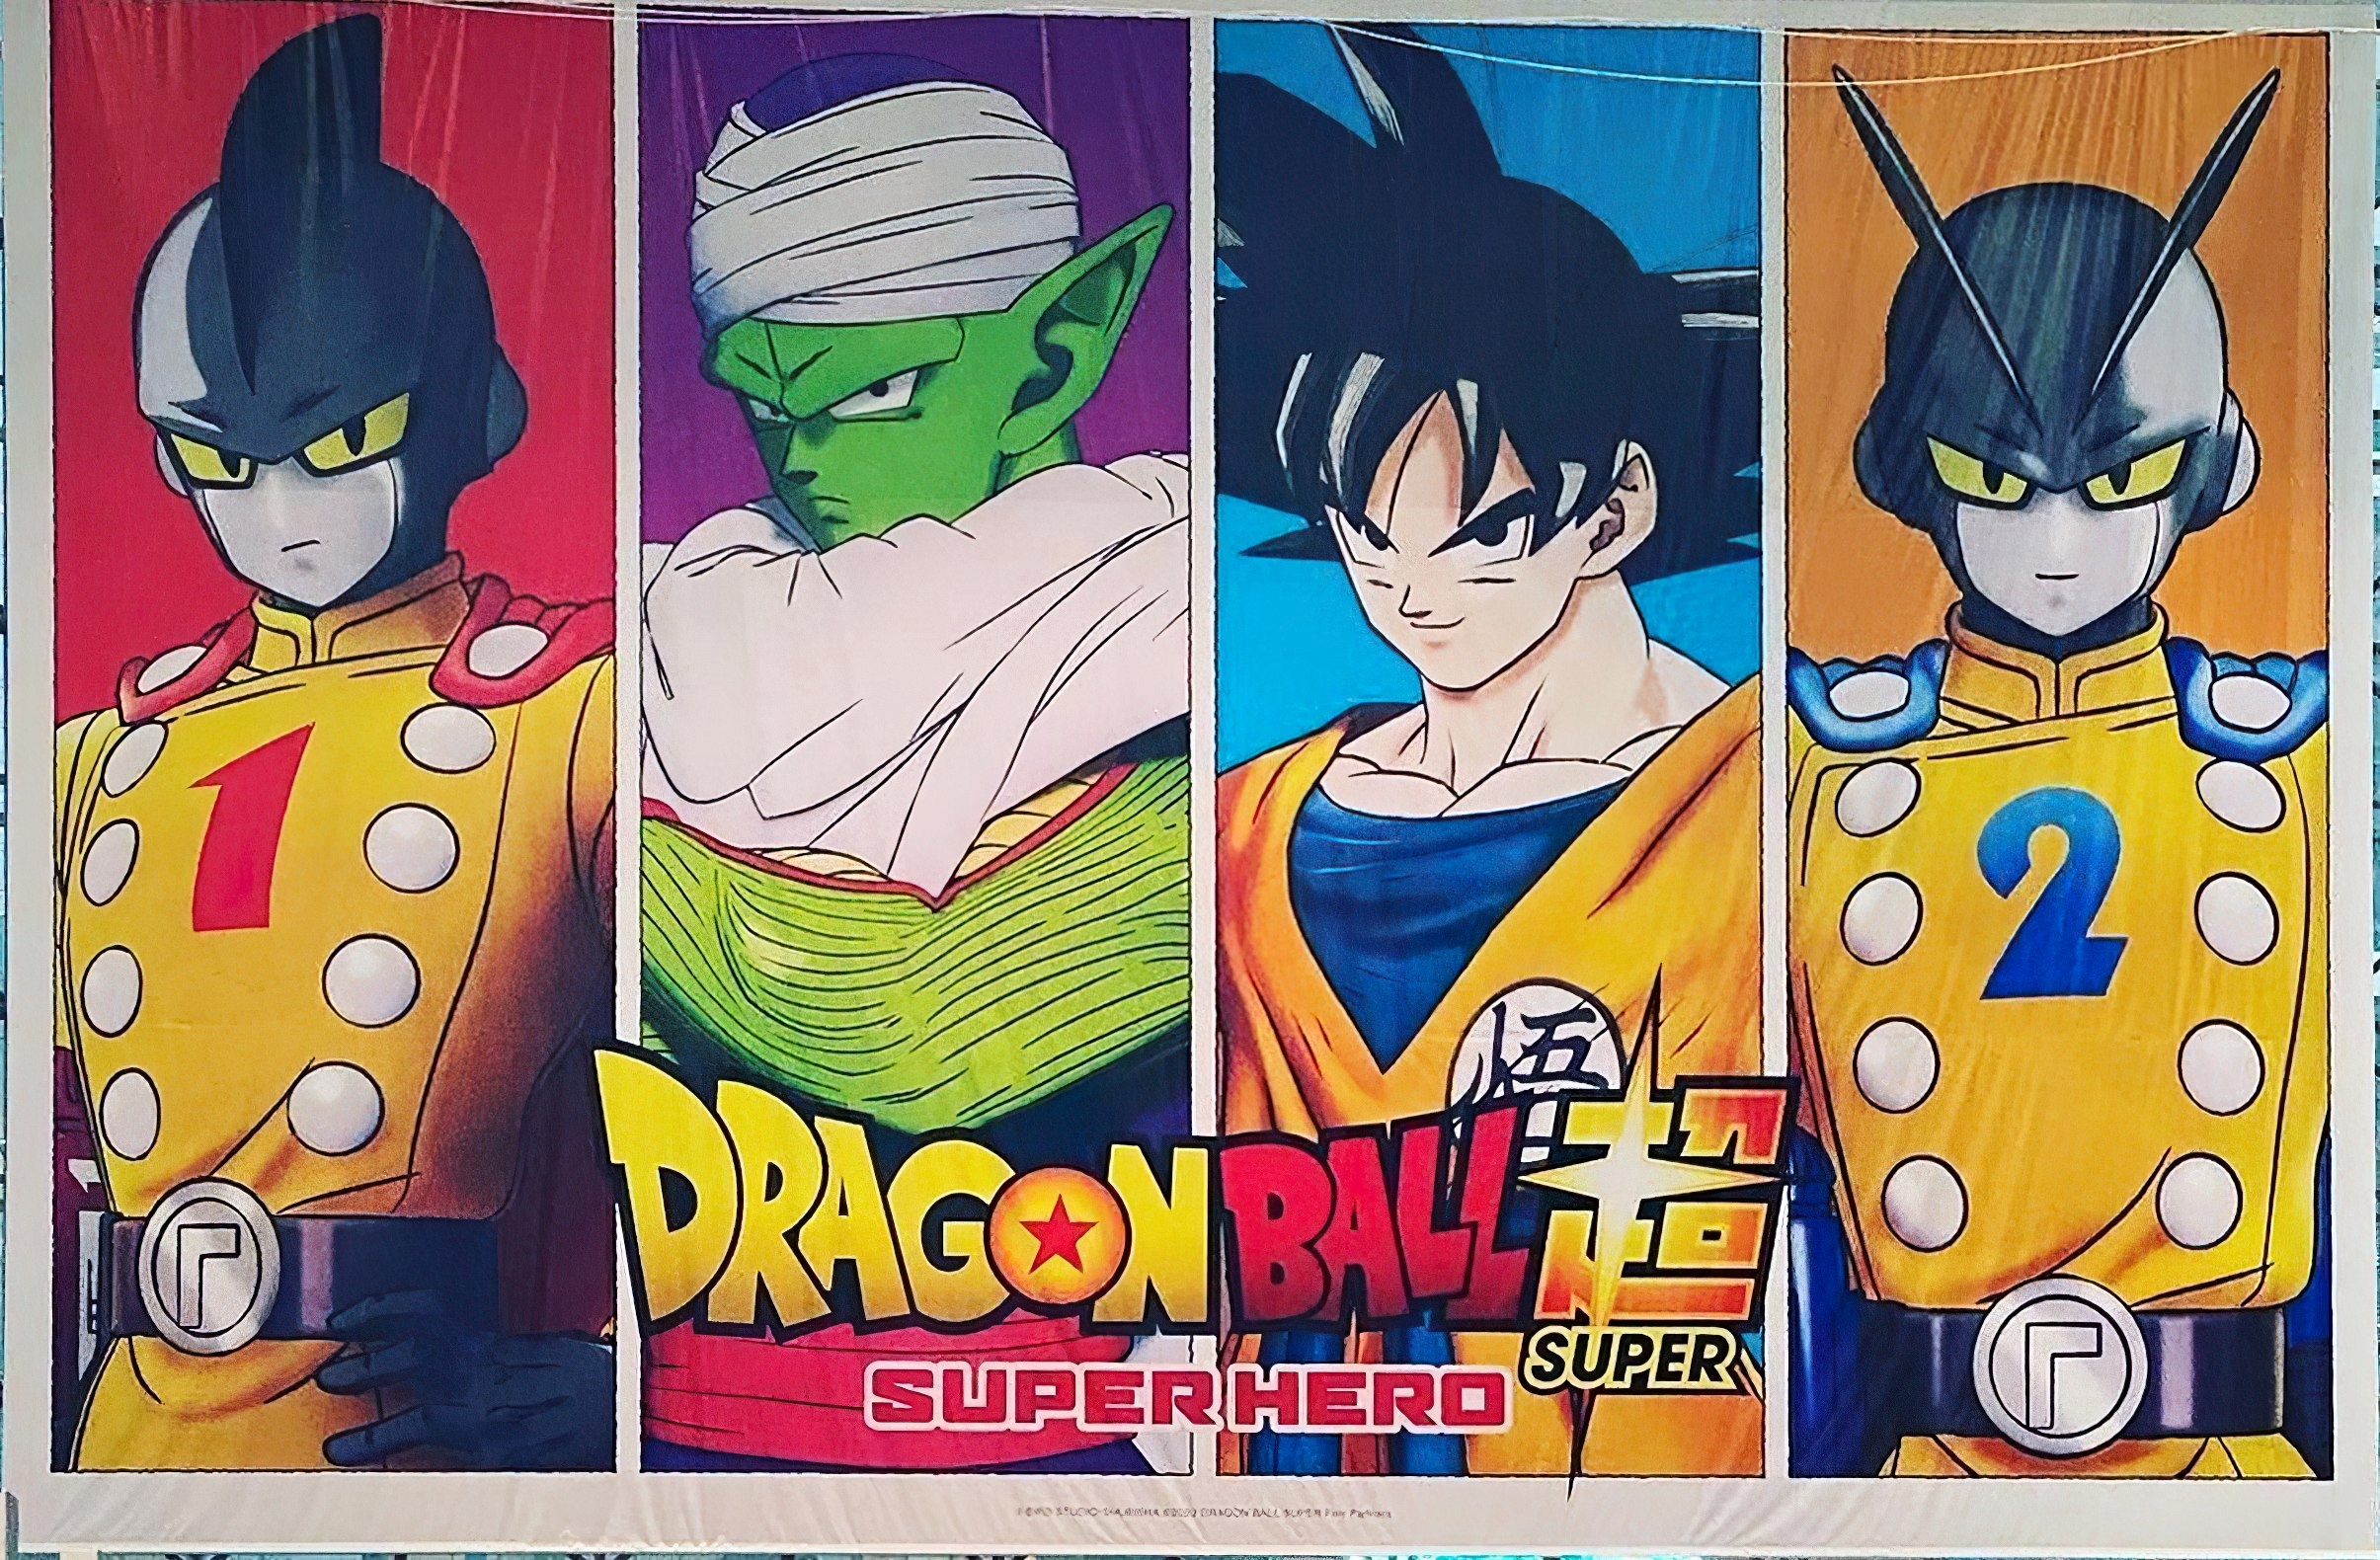 E se Dragon Ball Super fosse desenhado no estilo de Dragon Ball Z?